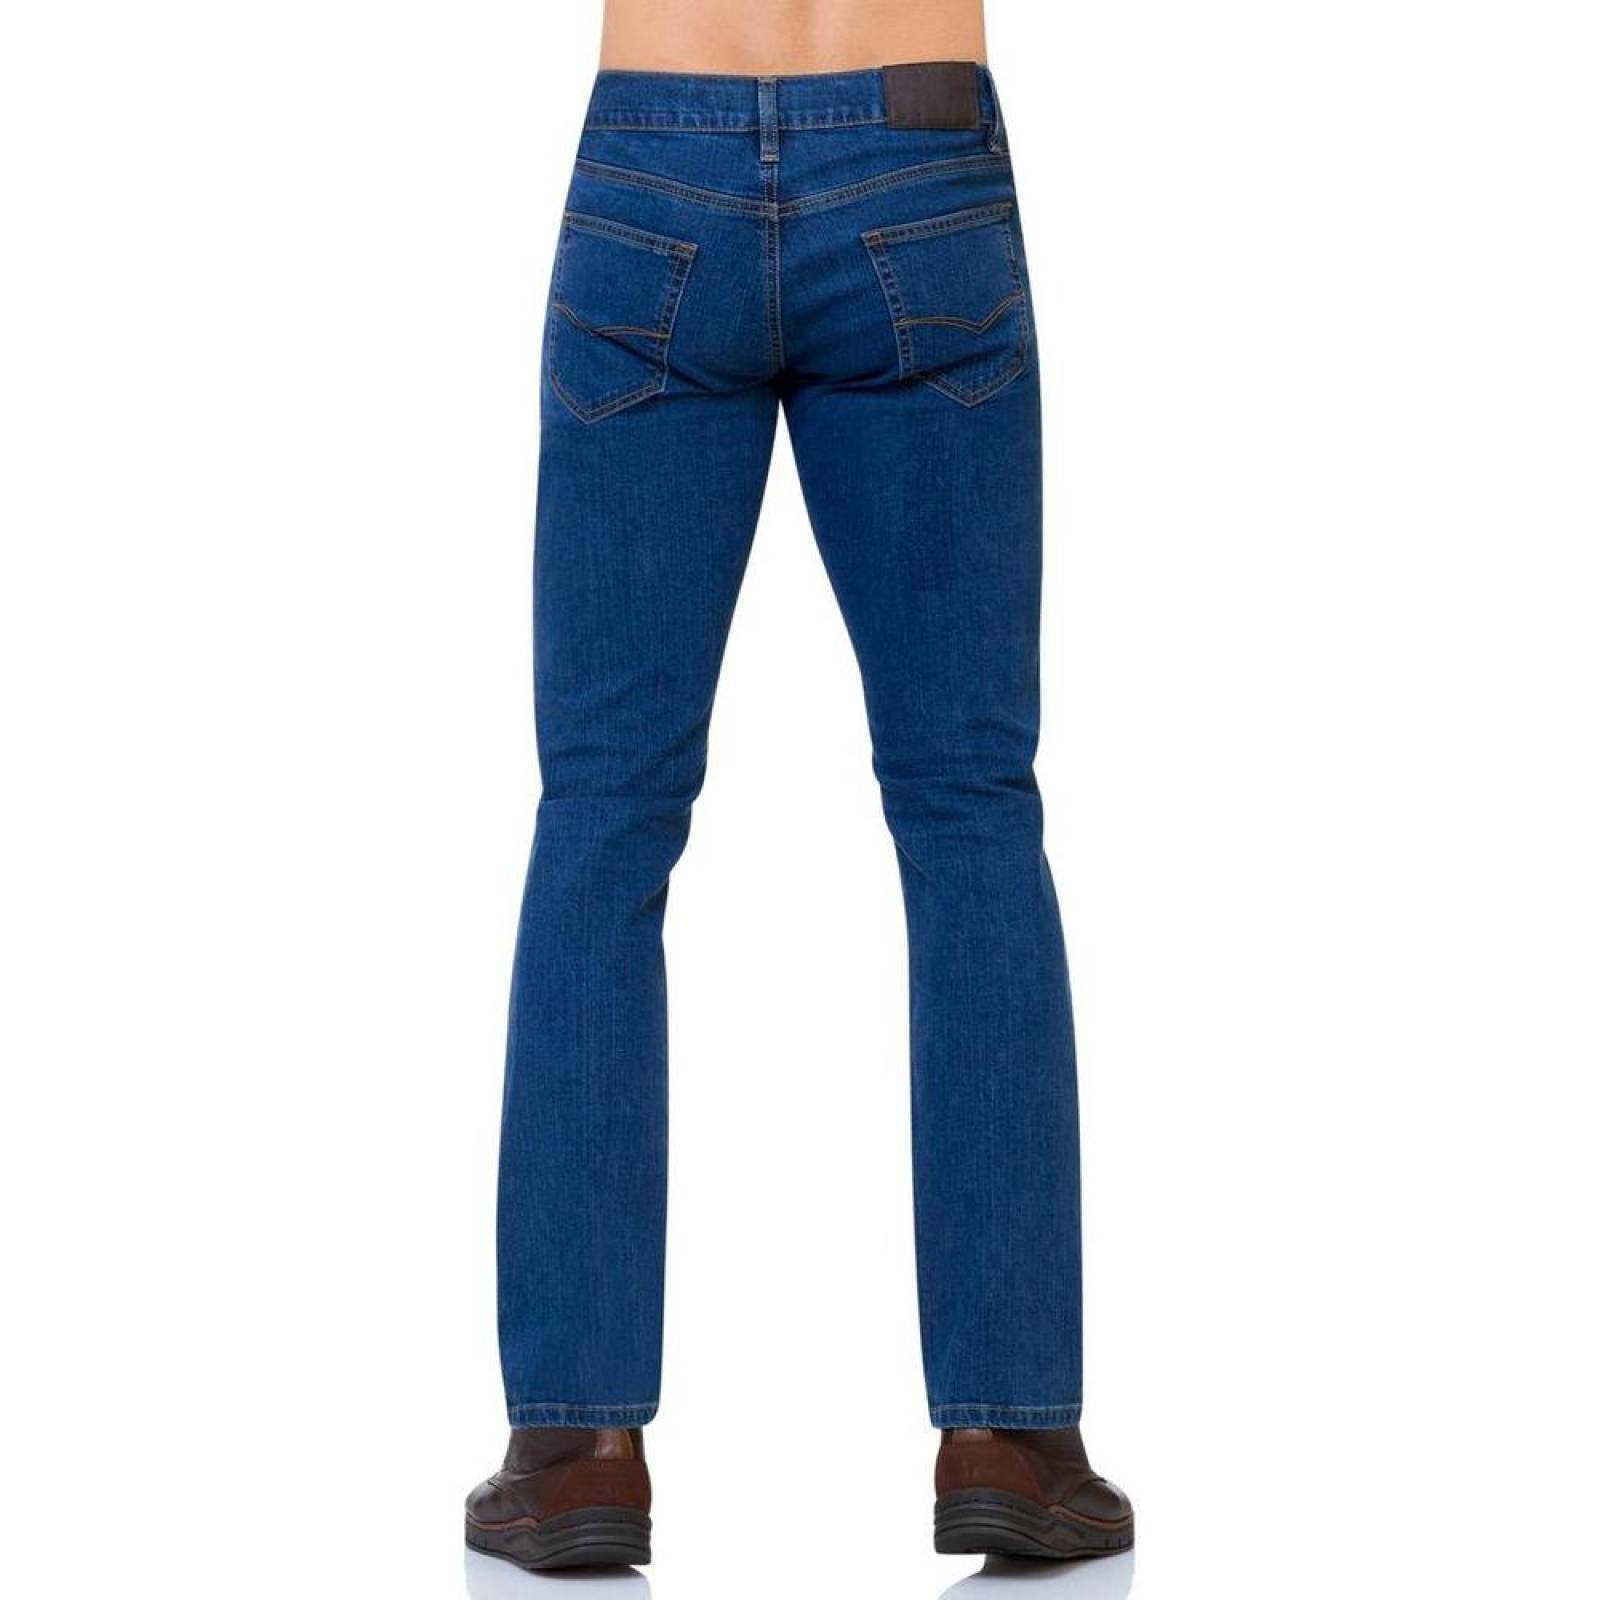 Jeans Oggi Jeans Hombre Azul Mezclilla Comfort Vaxter 